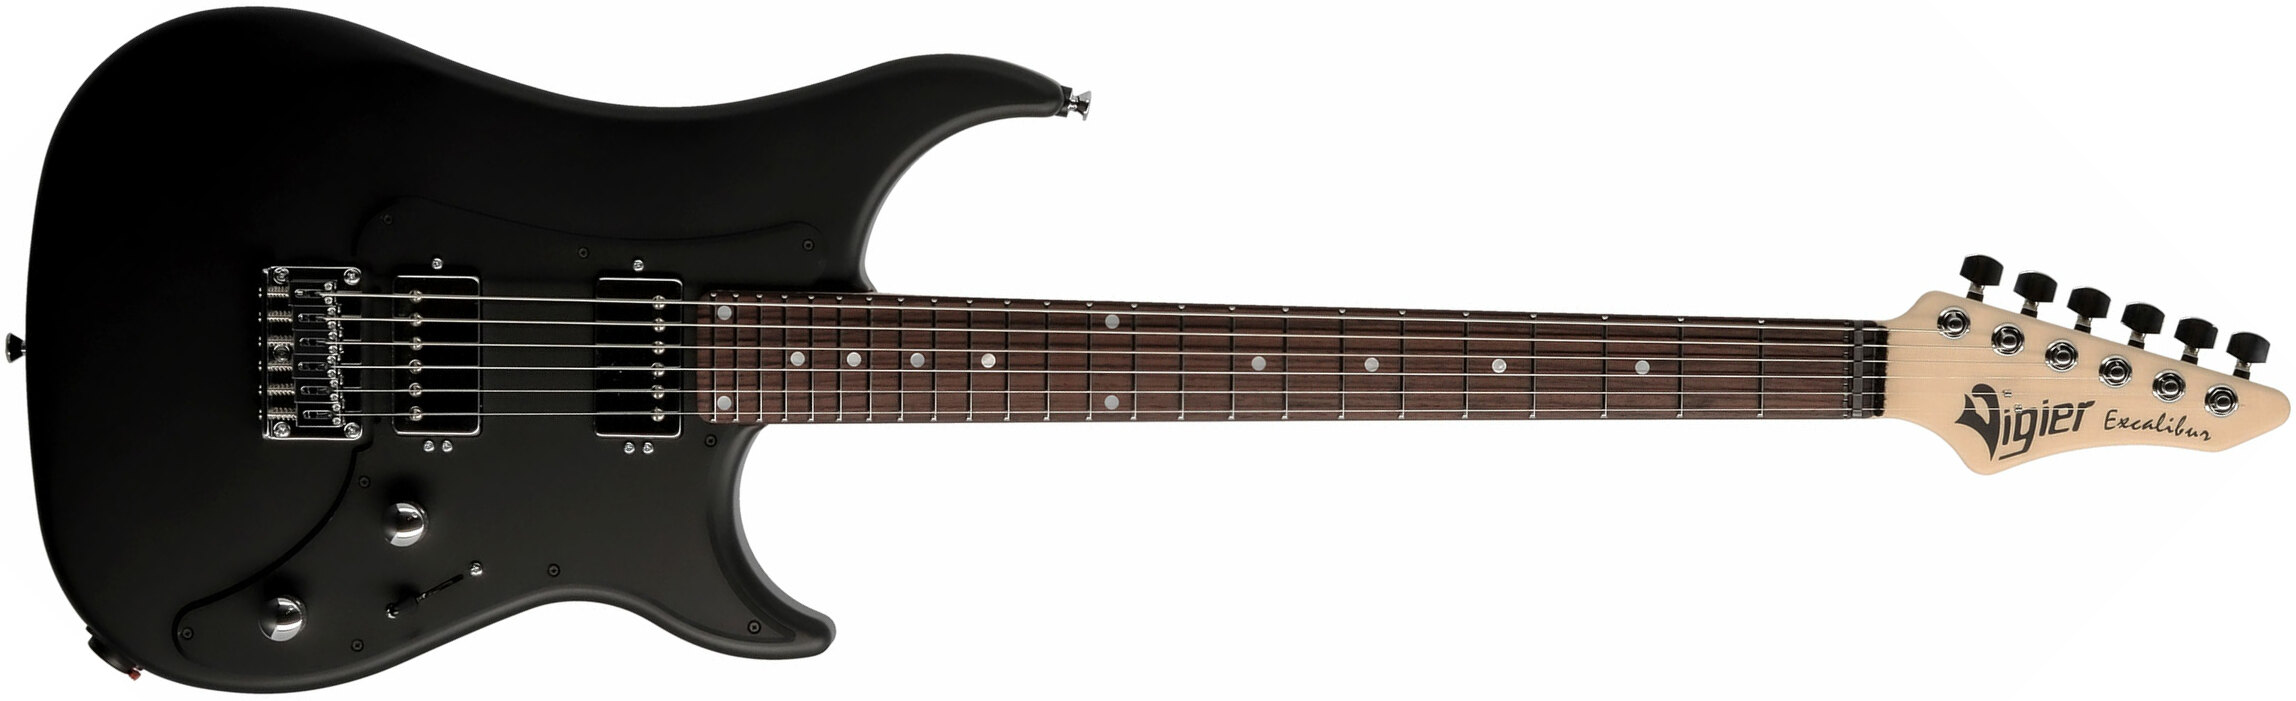 Vigier Excalibur Indus 2h Ht Rw - Black Matte - Double Cut E-Gitarre - Main picture